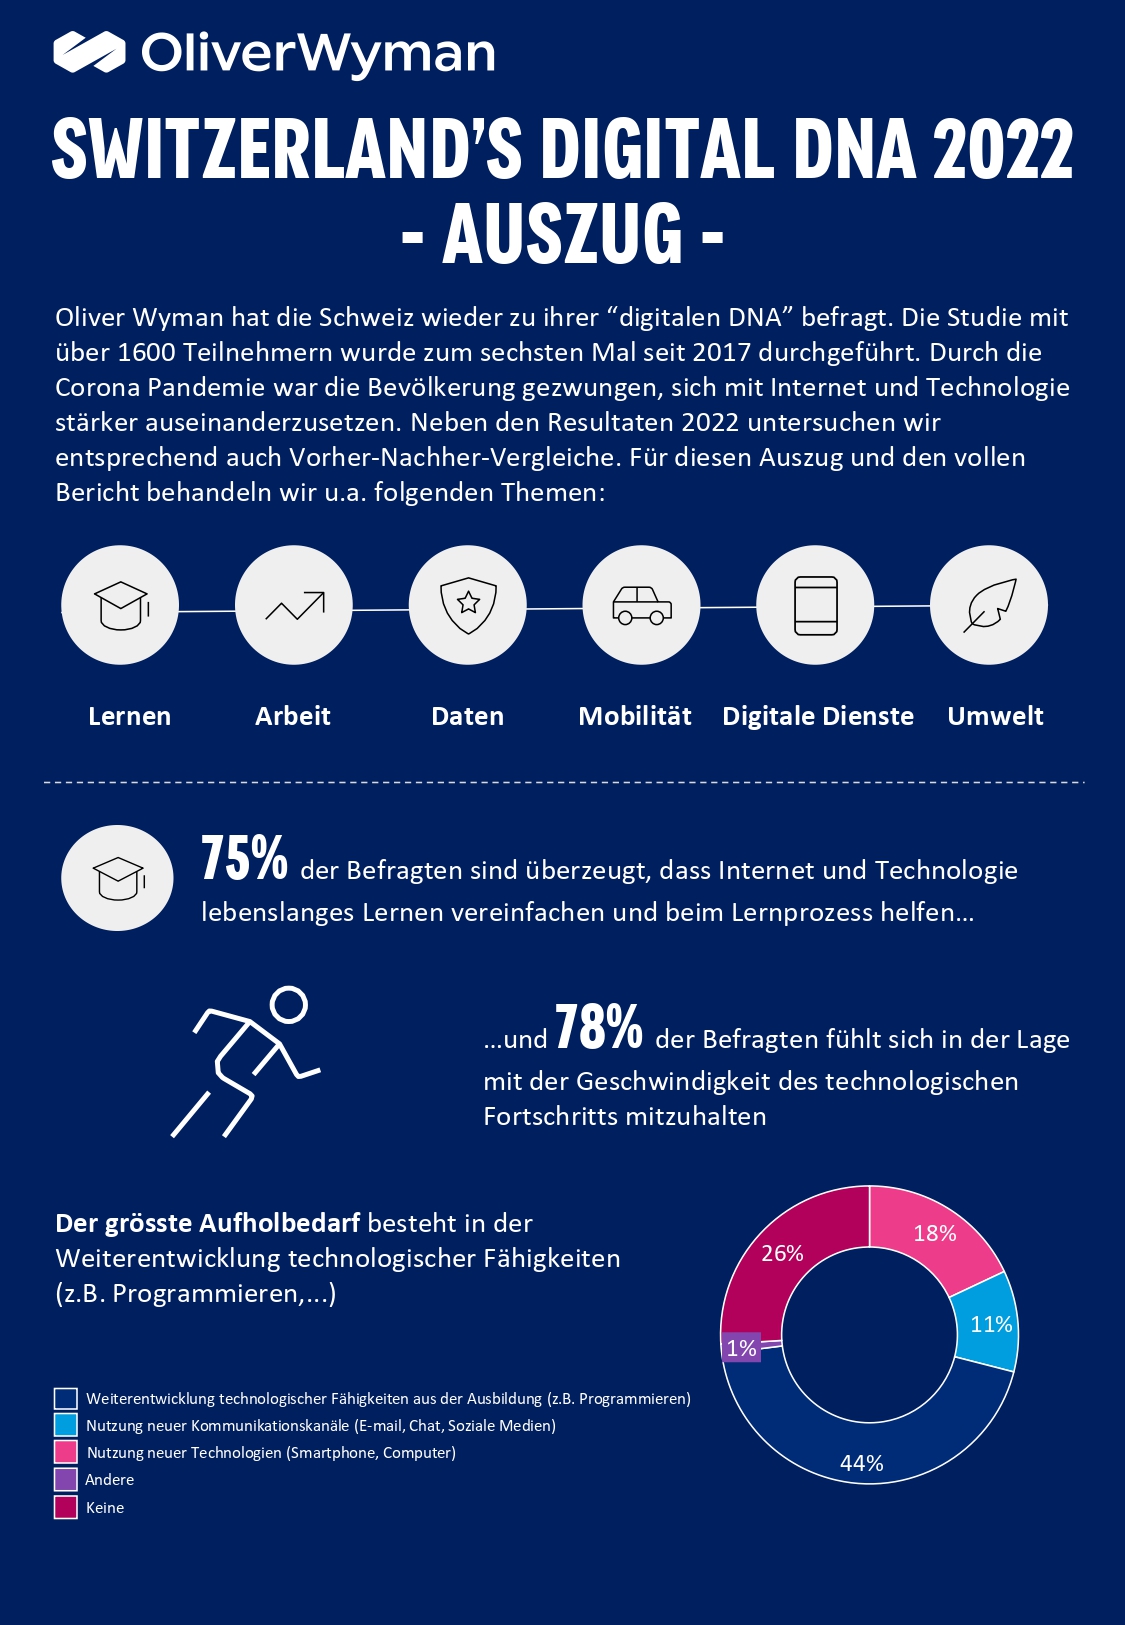 La prima pagina delle infografiche dell'inchiesta "Switzerlands Digital DNA" di Oliver Wyman e digitalswitzerland (in lingua tedesca)